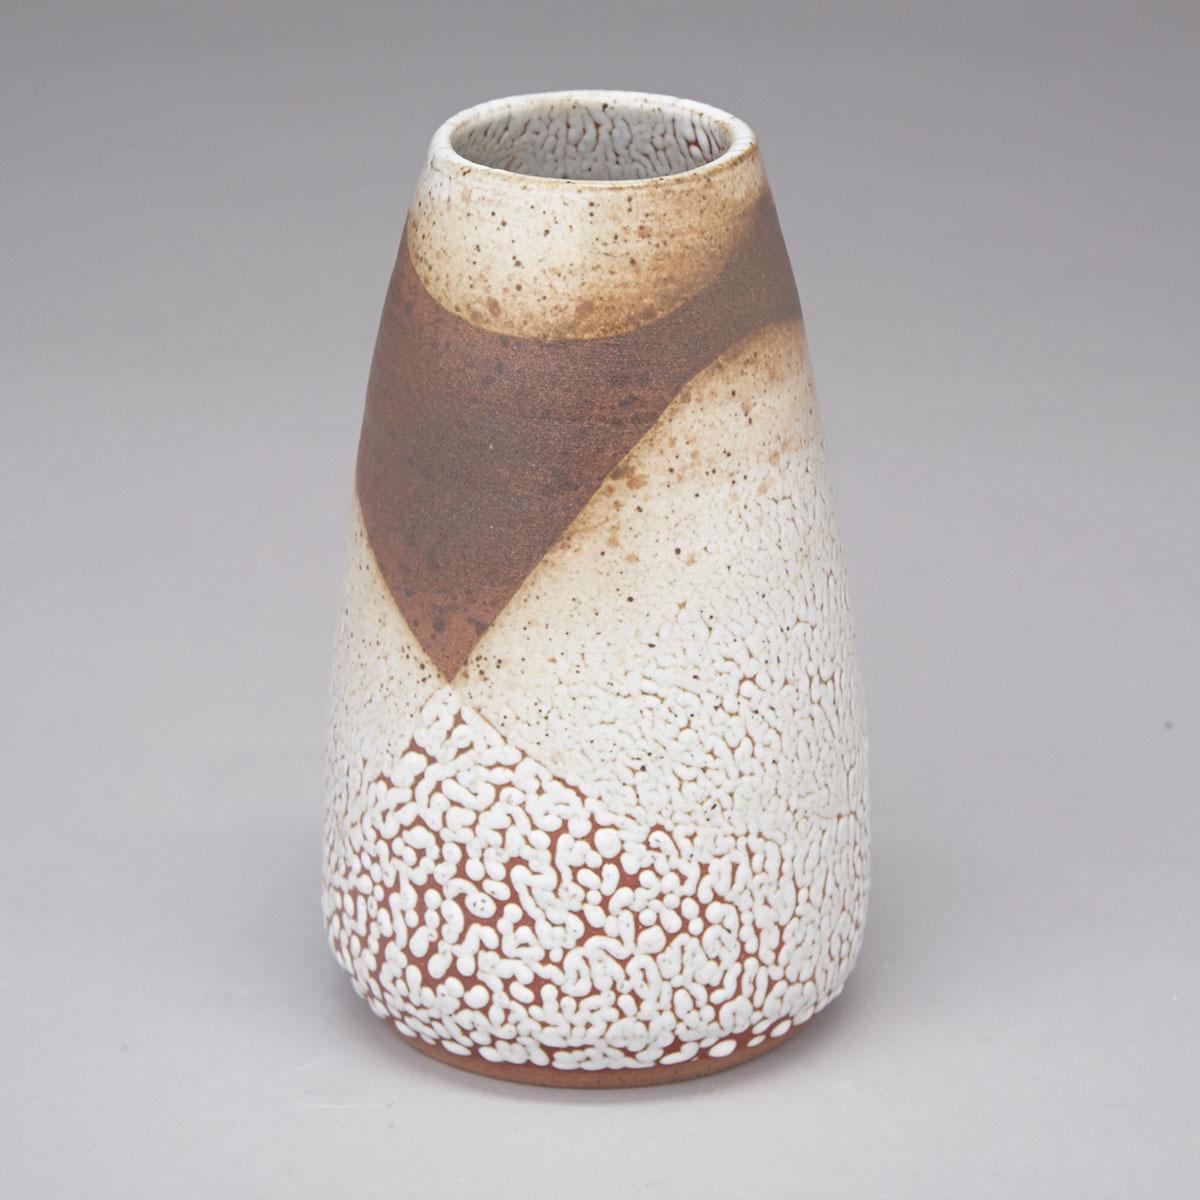 Deichmann Cream Pebble Glazed Vase, Kjeld & Erica Deichmann, dated 1956